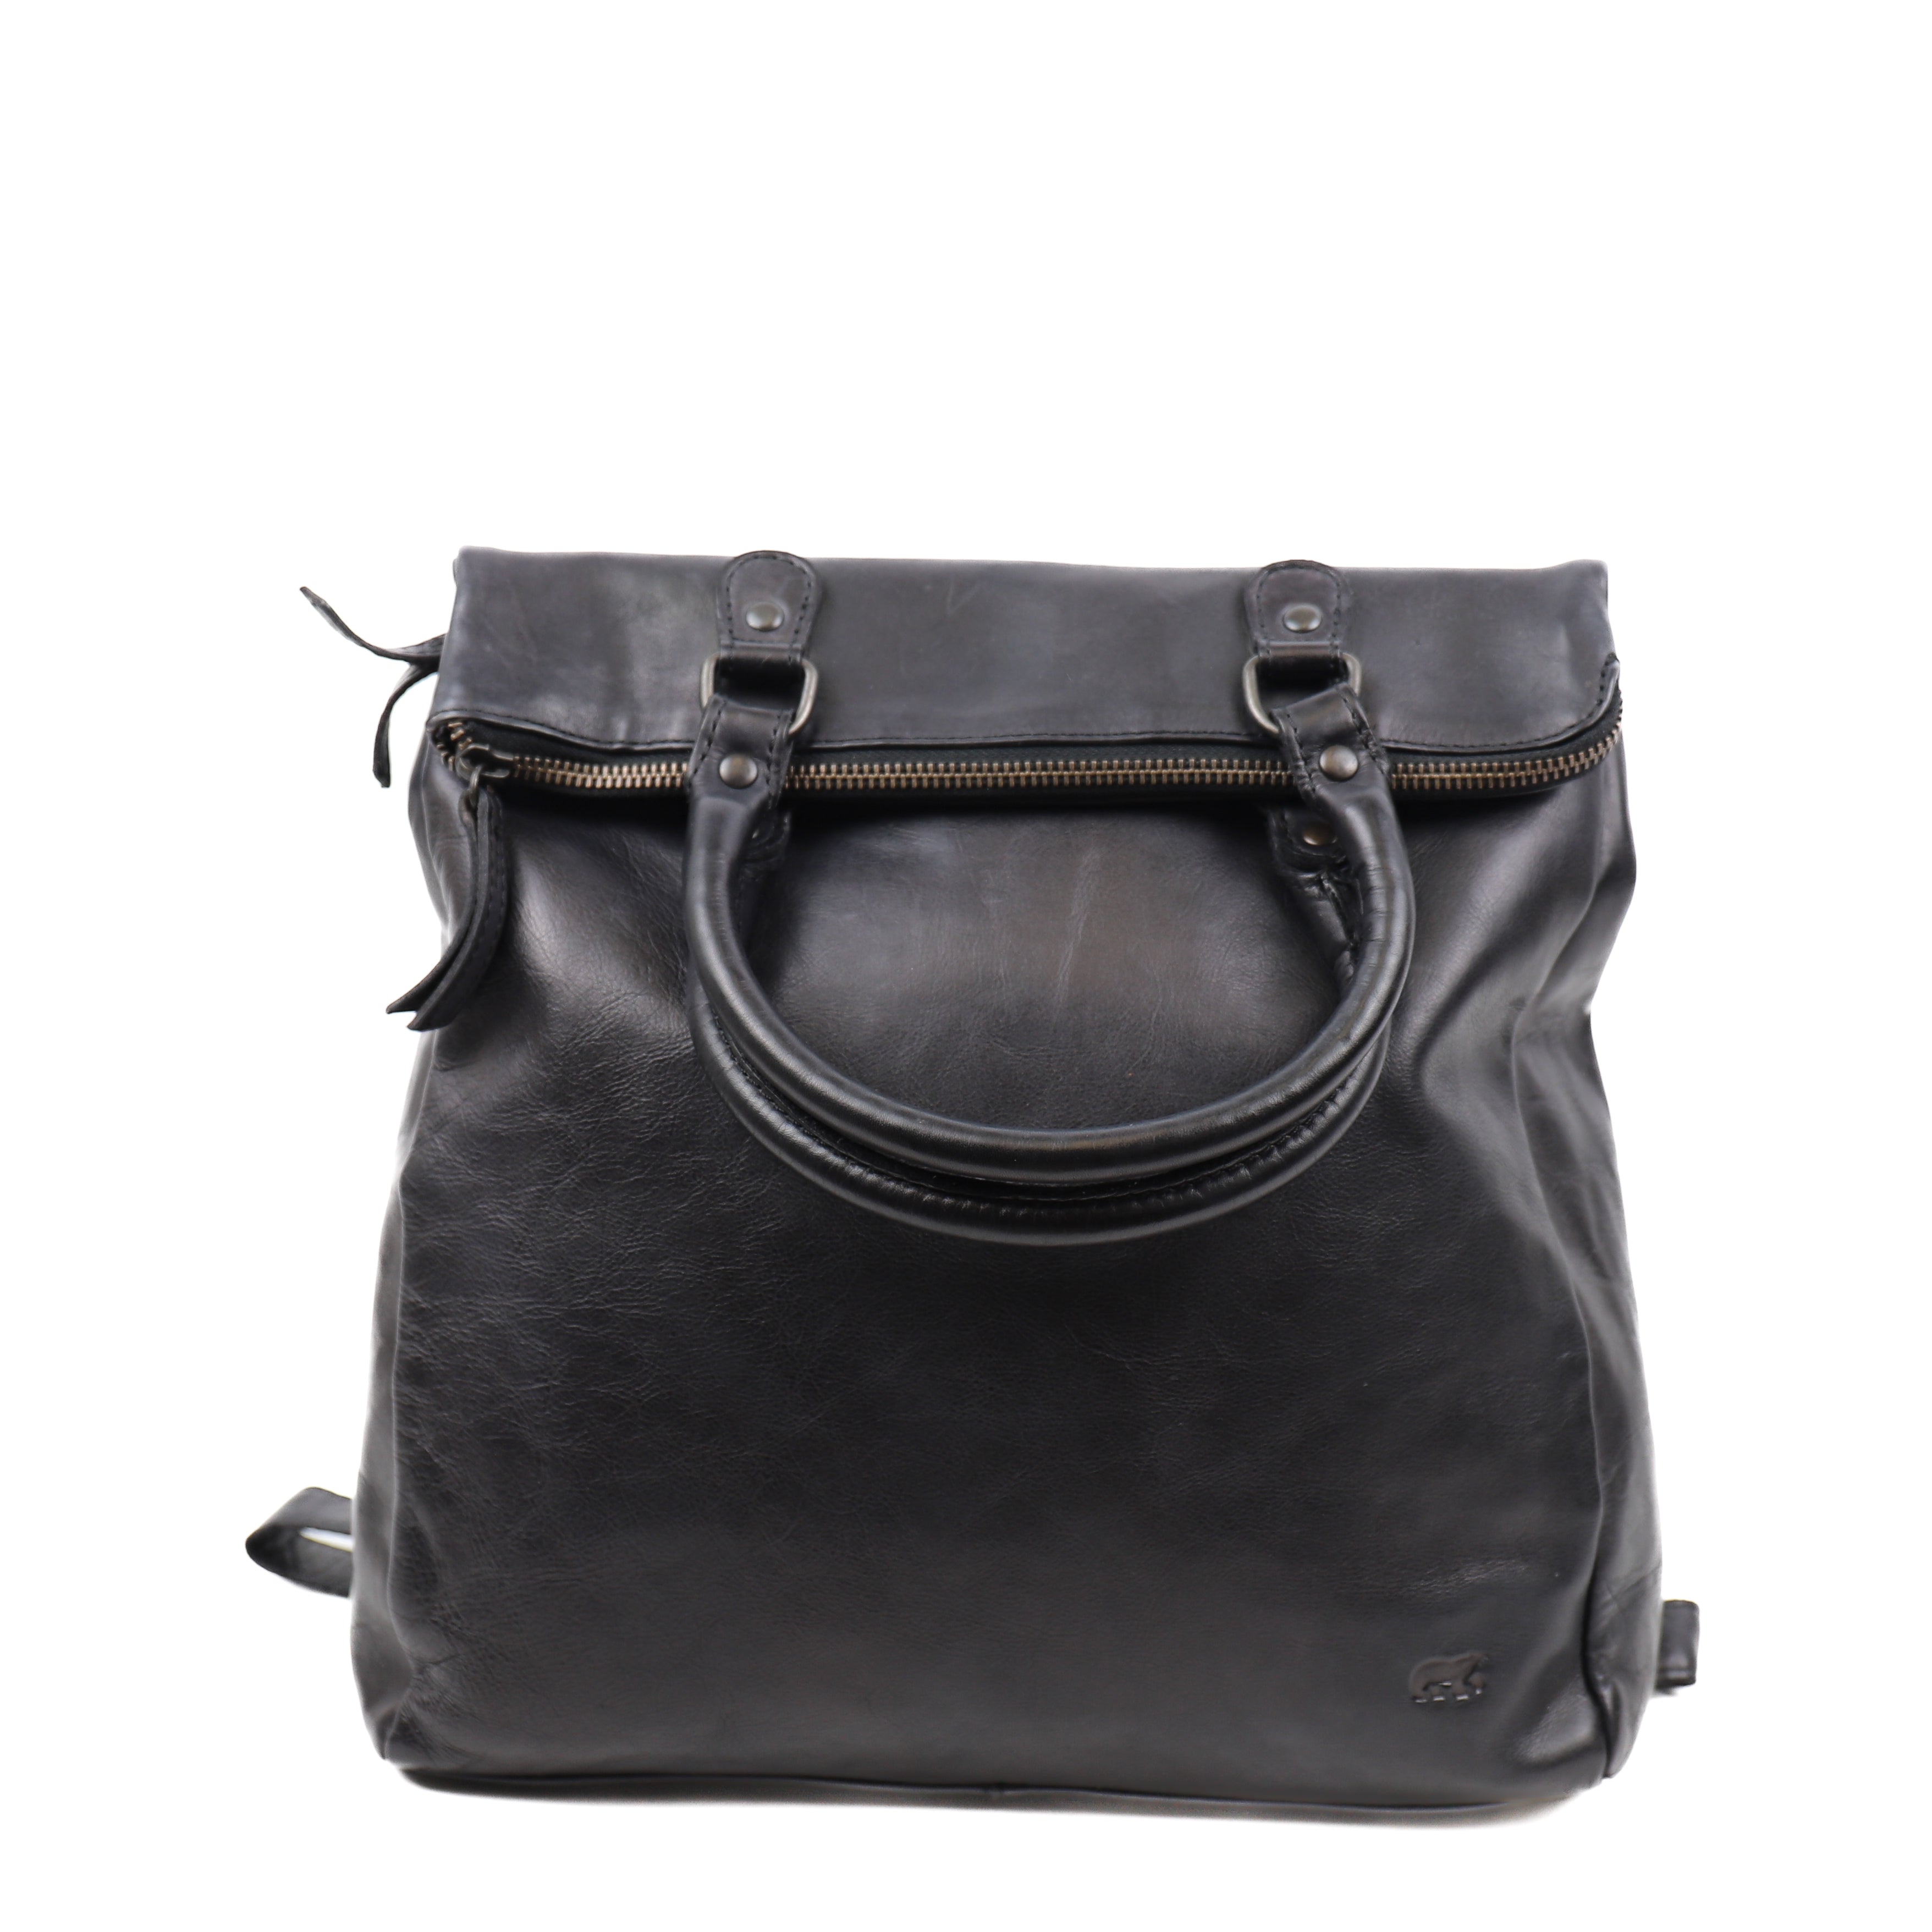 Shoulder bag/backpack 'Evi' black